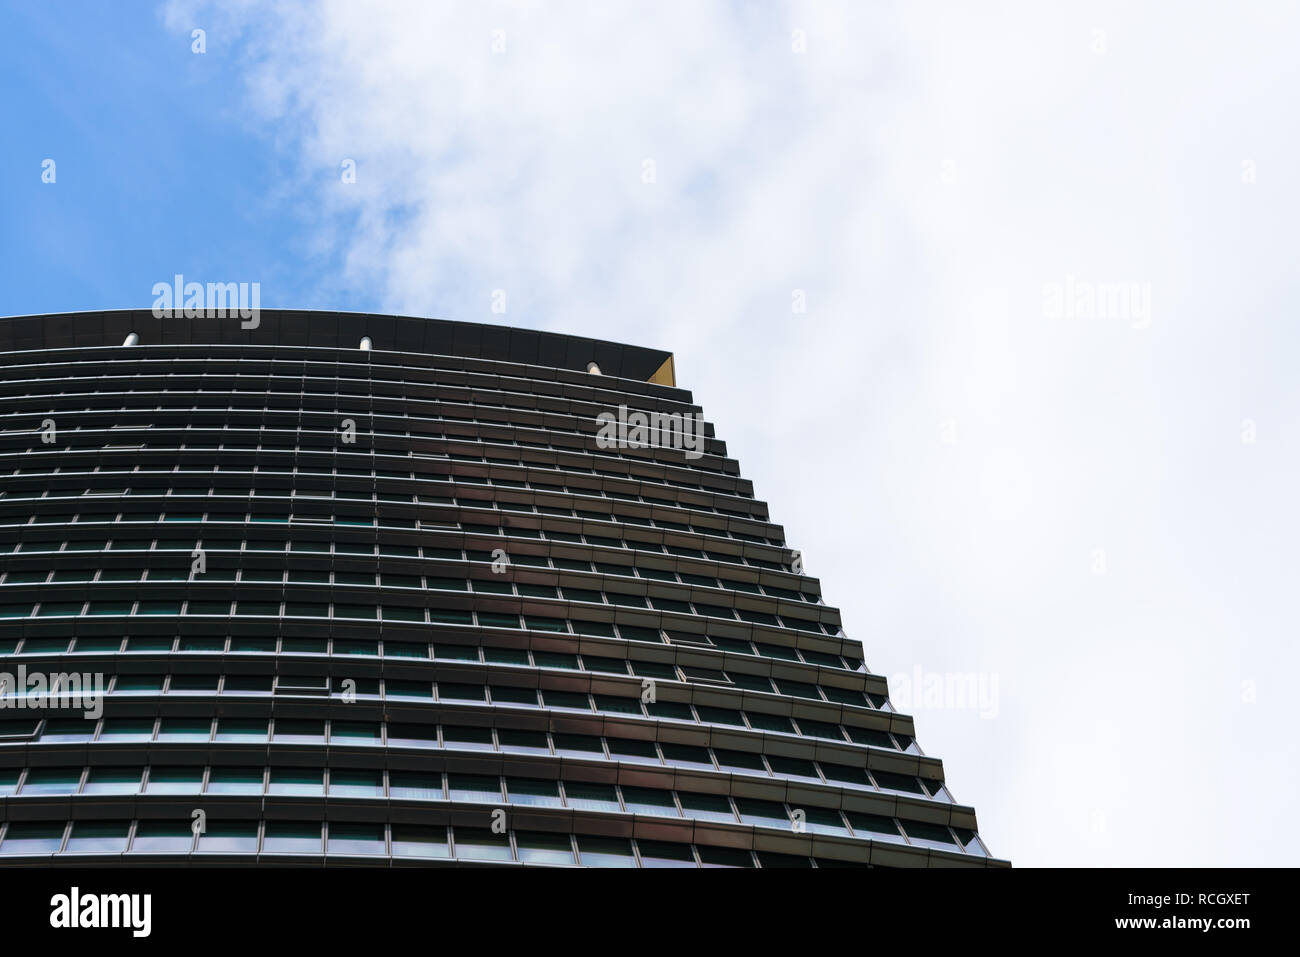 London Marriott Hotel Canary Wharf. De l'extérieur de l'immeuble de bureaux, hôtel ou gratte-ciel avec des nuages et du ciel reflétée sur la surface. Banque D'Images